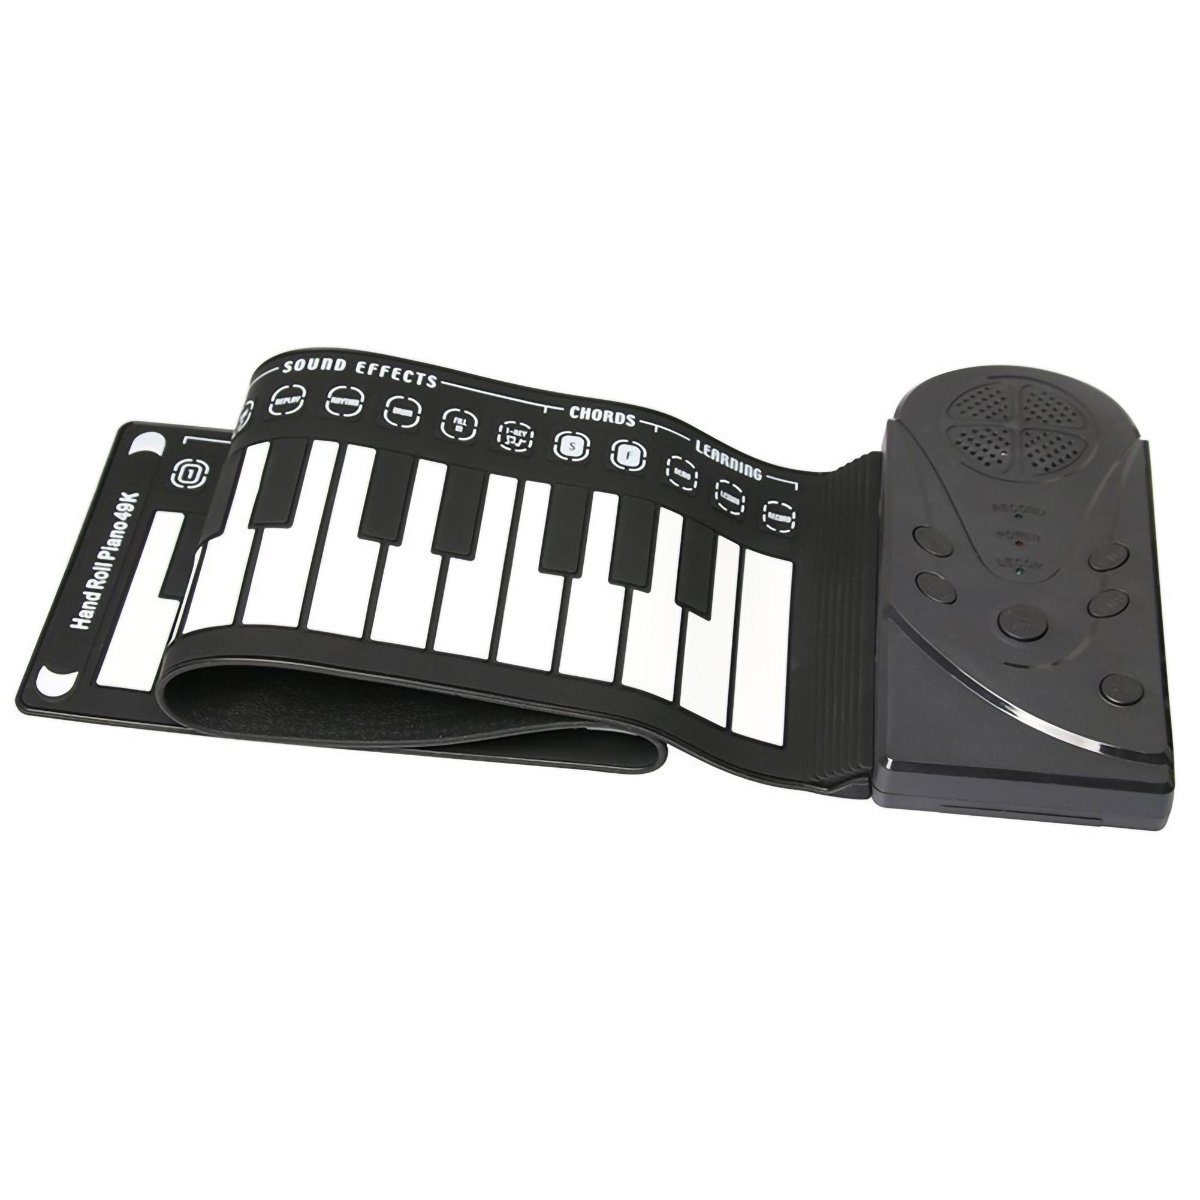 yozhiqu Digitalpiano 49-Tasten-Handrollklavier mit Trompete - Tragbares faltbares Keyboard, Kompakte Größe, einfach zu transportieren, ideal für Anfänger